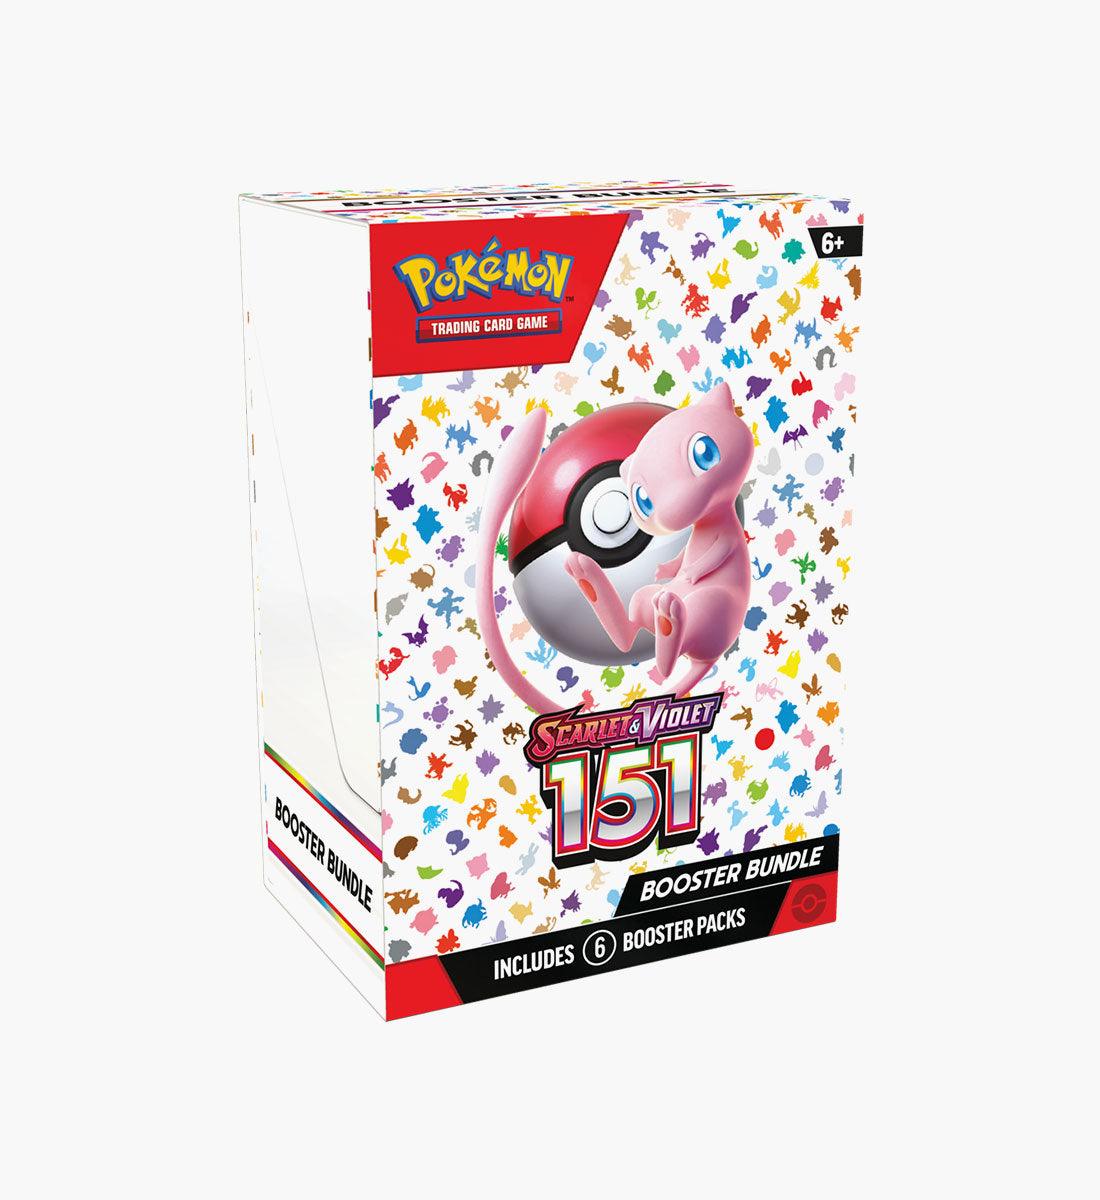 Pokémon TCG Scarlet &amp; Violet 151 Booster Bundle - TCG Winkel